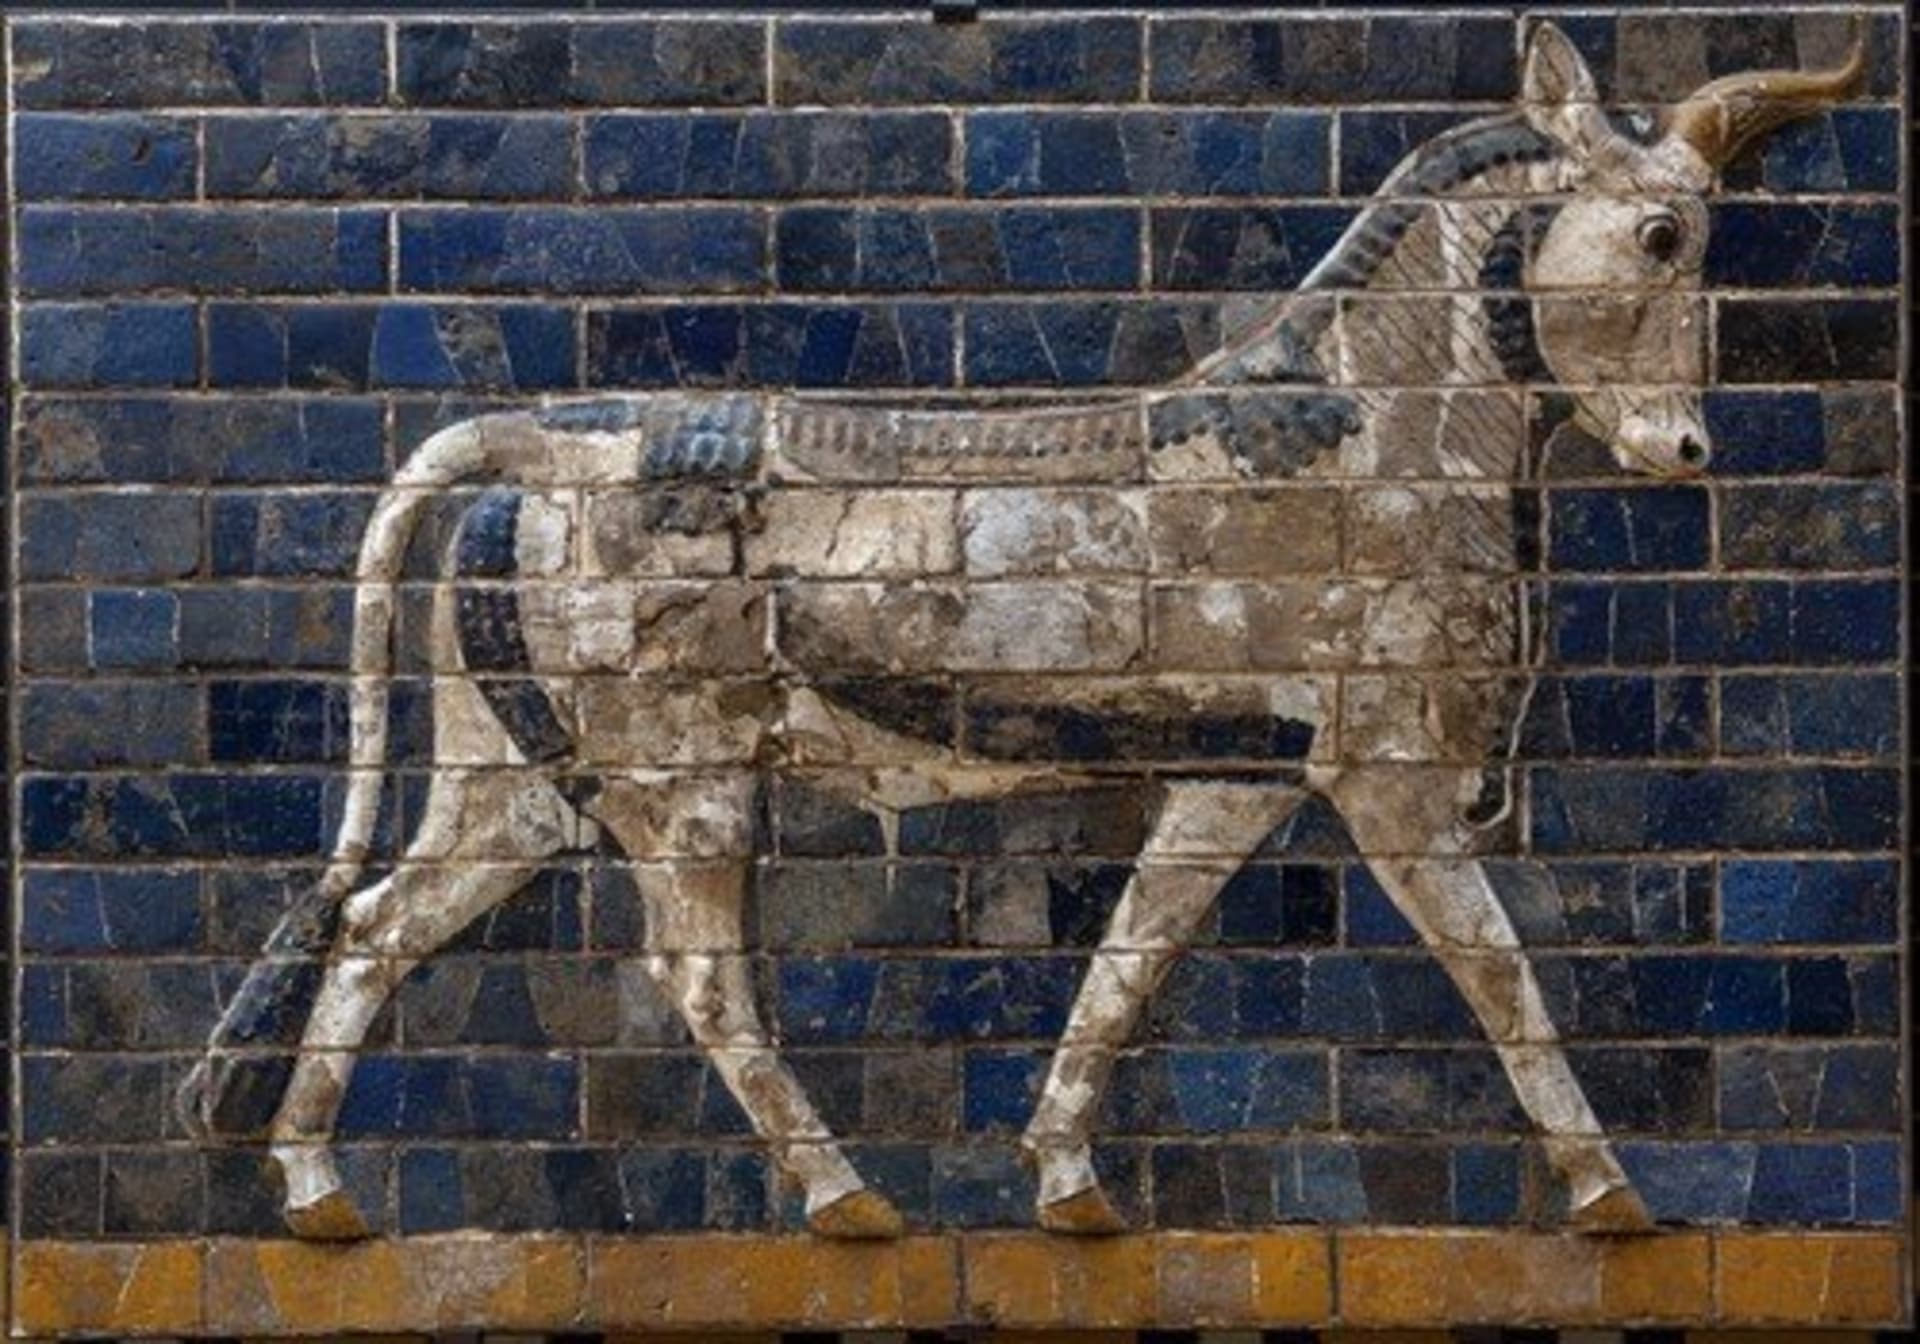 Posvátný býk z Ištařiny brány, jedné z dominant starověkého Babylónu